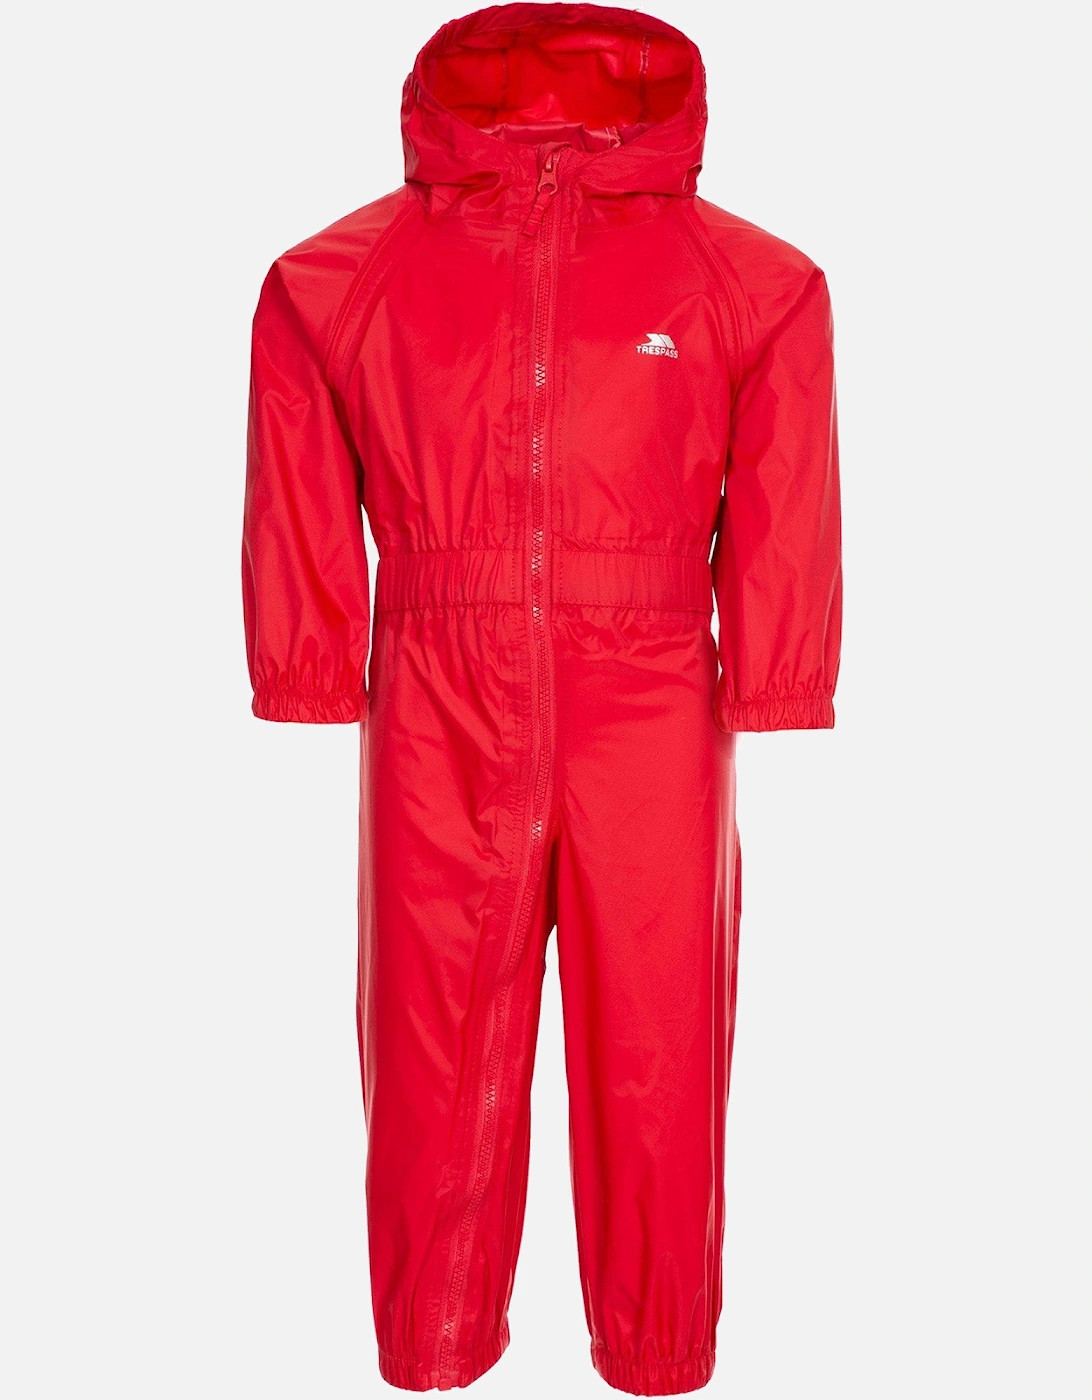 Kids Button Waterproof Rain Suit